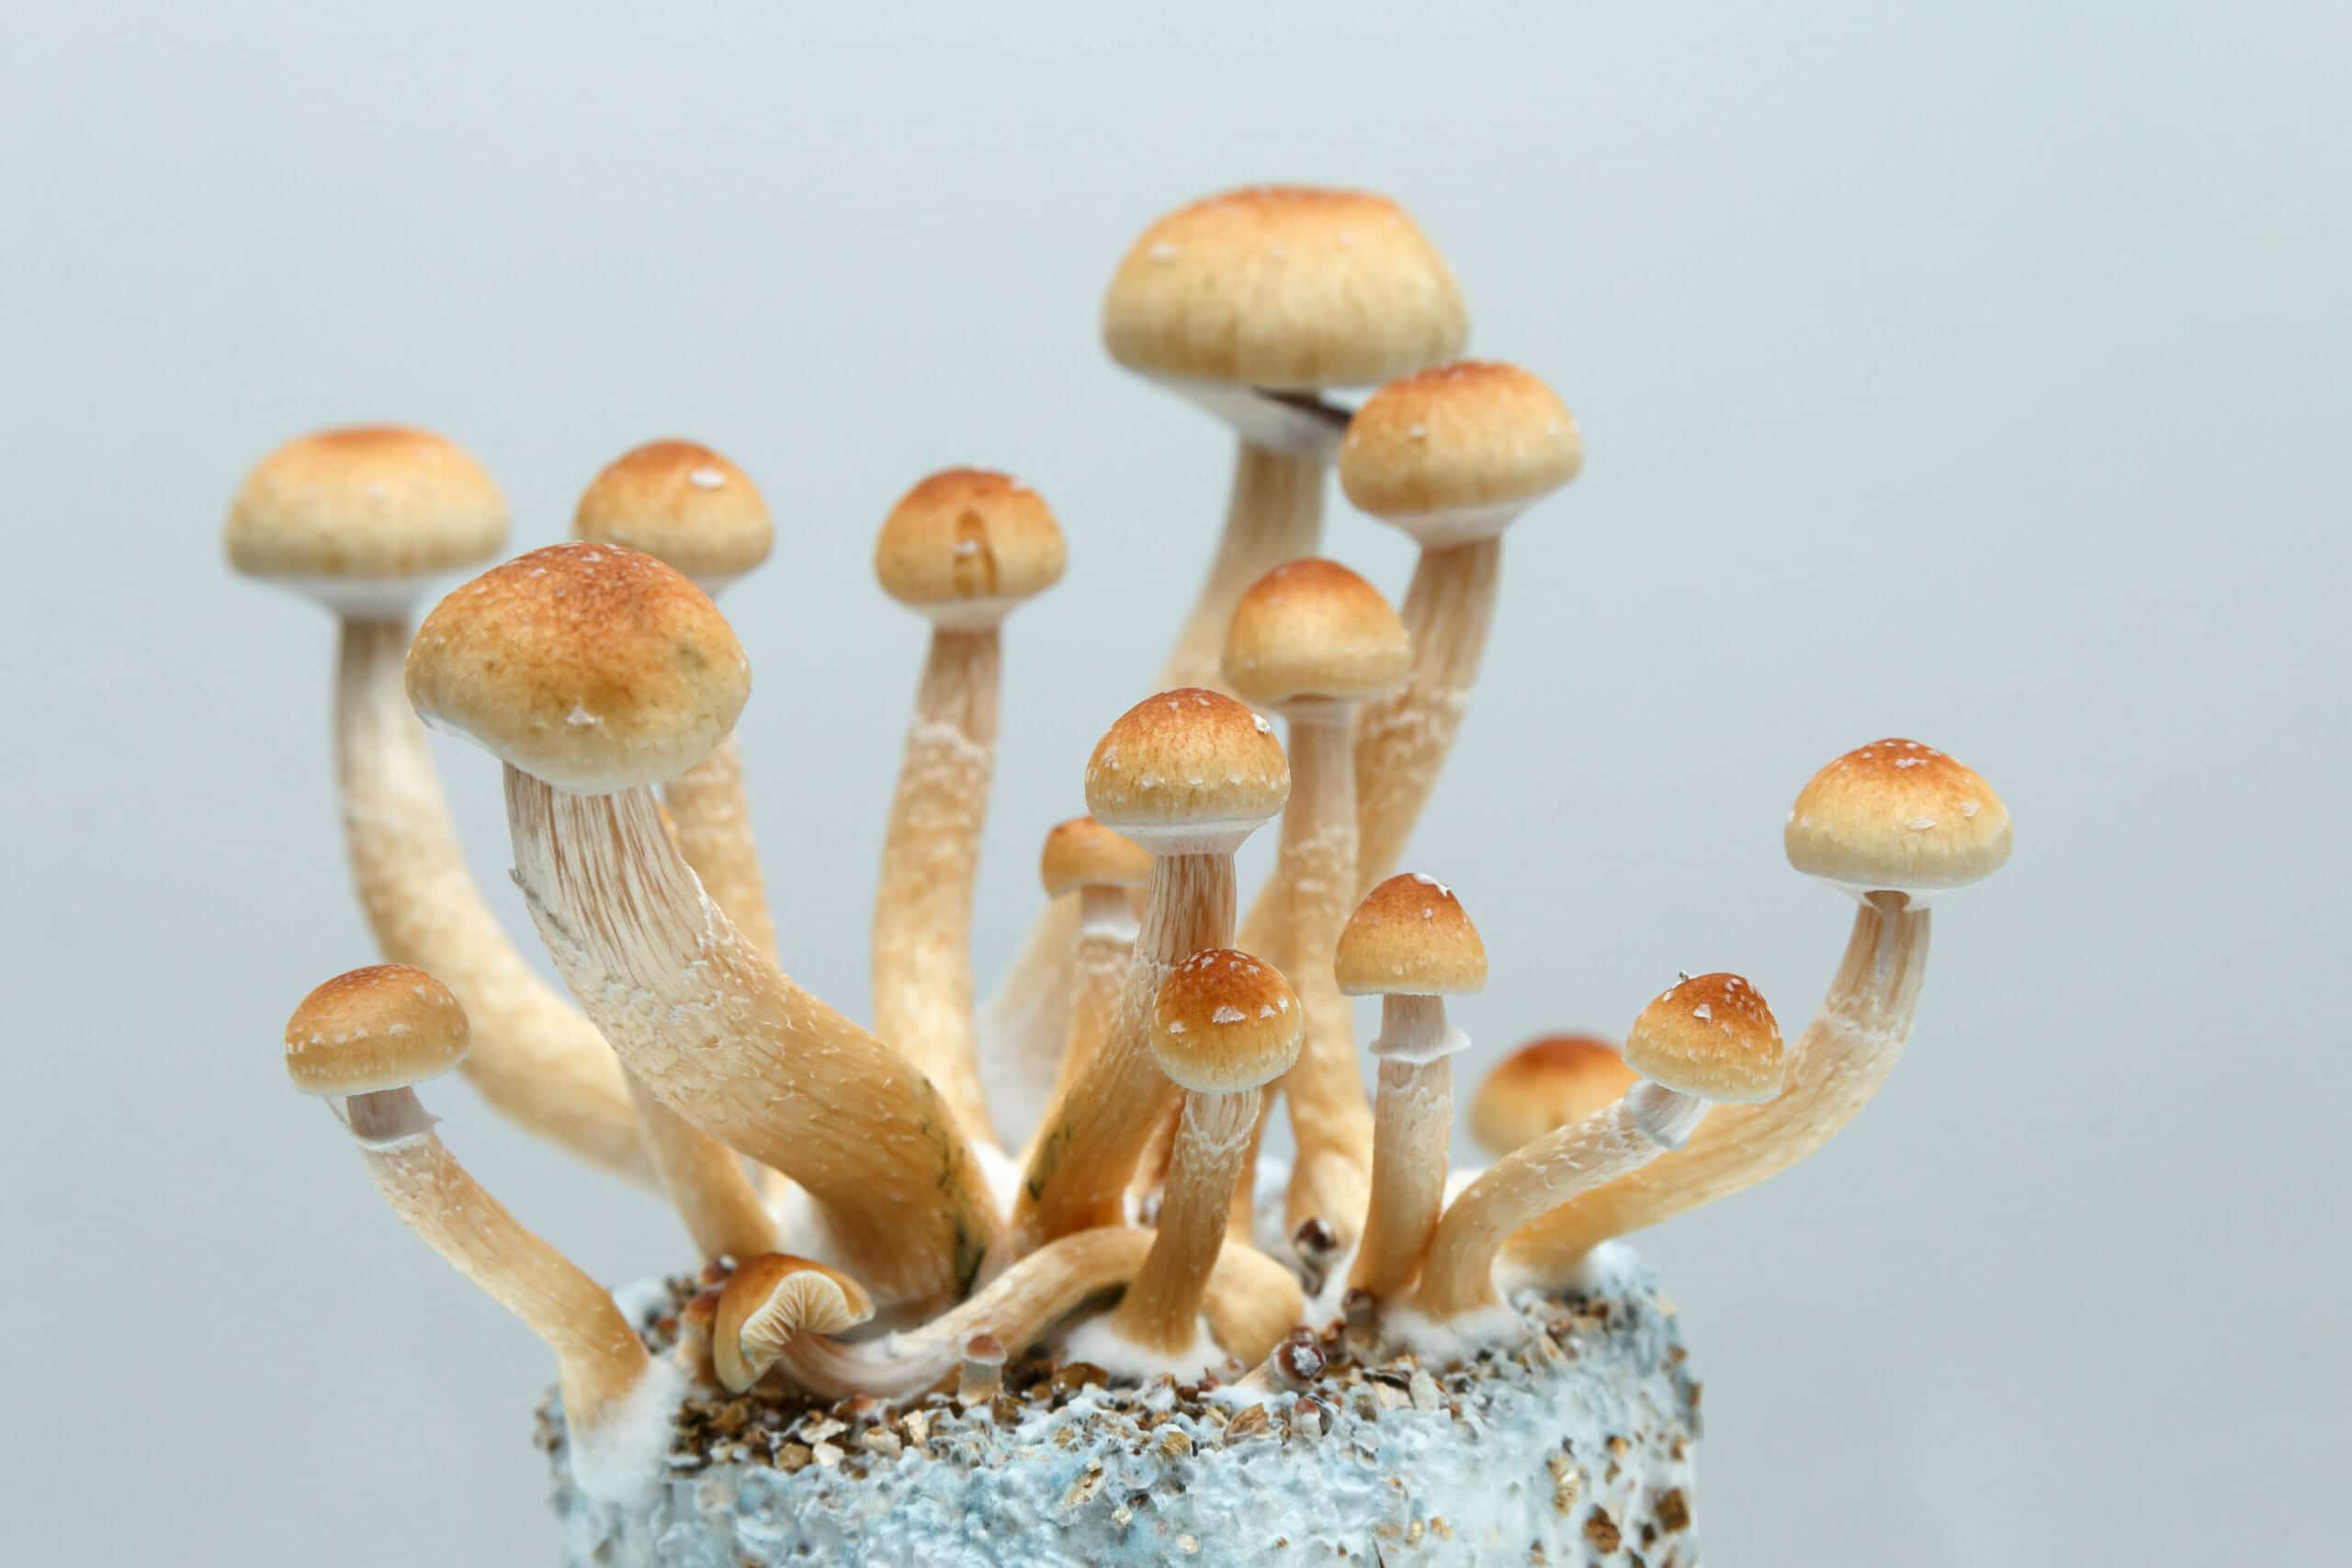 A fruiting mushroom